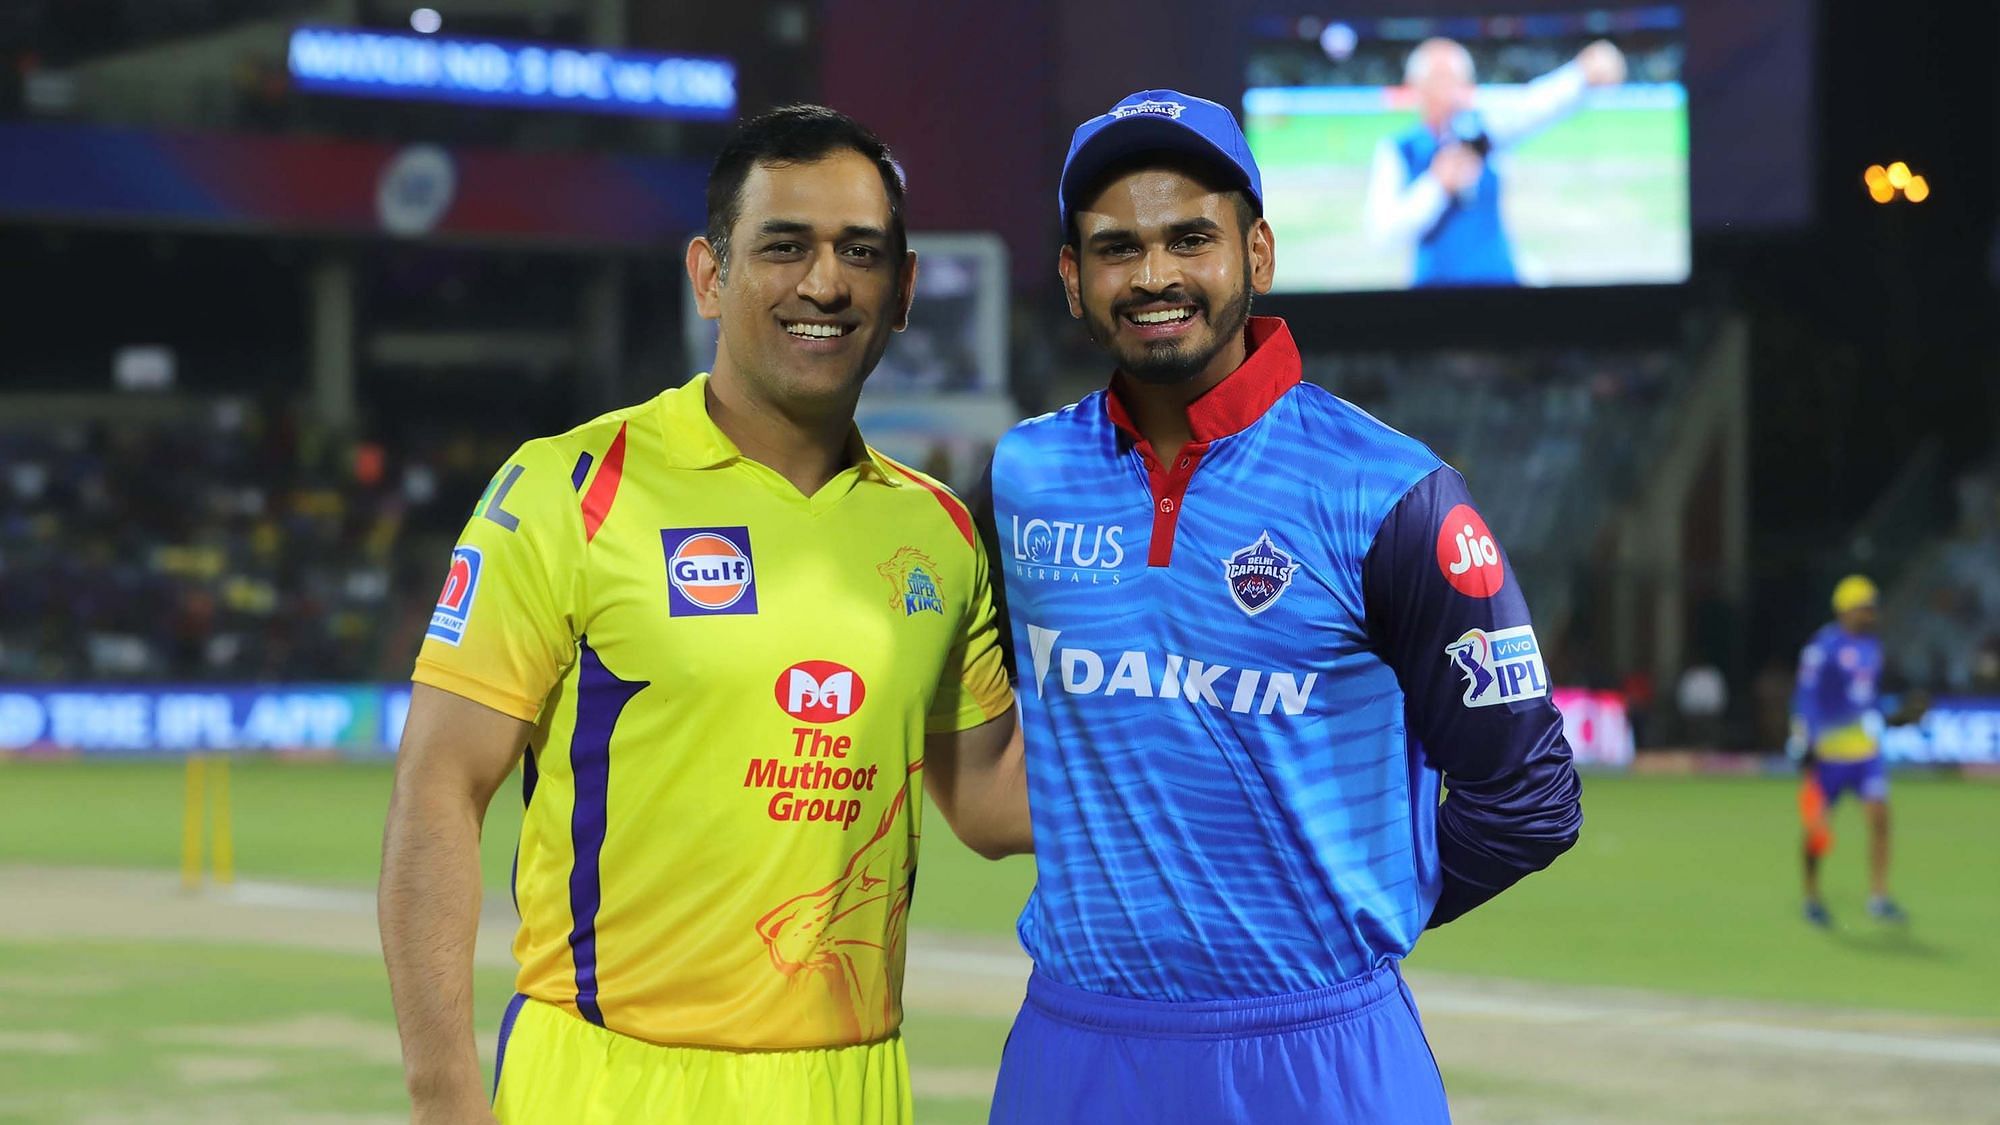 चेन्नई सुपर किंग्स के कप्तान महेंद्र सिंह धोनी के साथ श्रेयस अय्यर